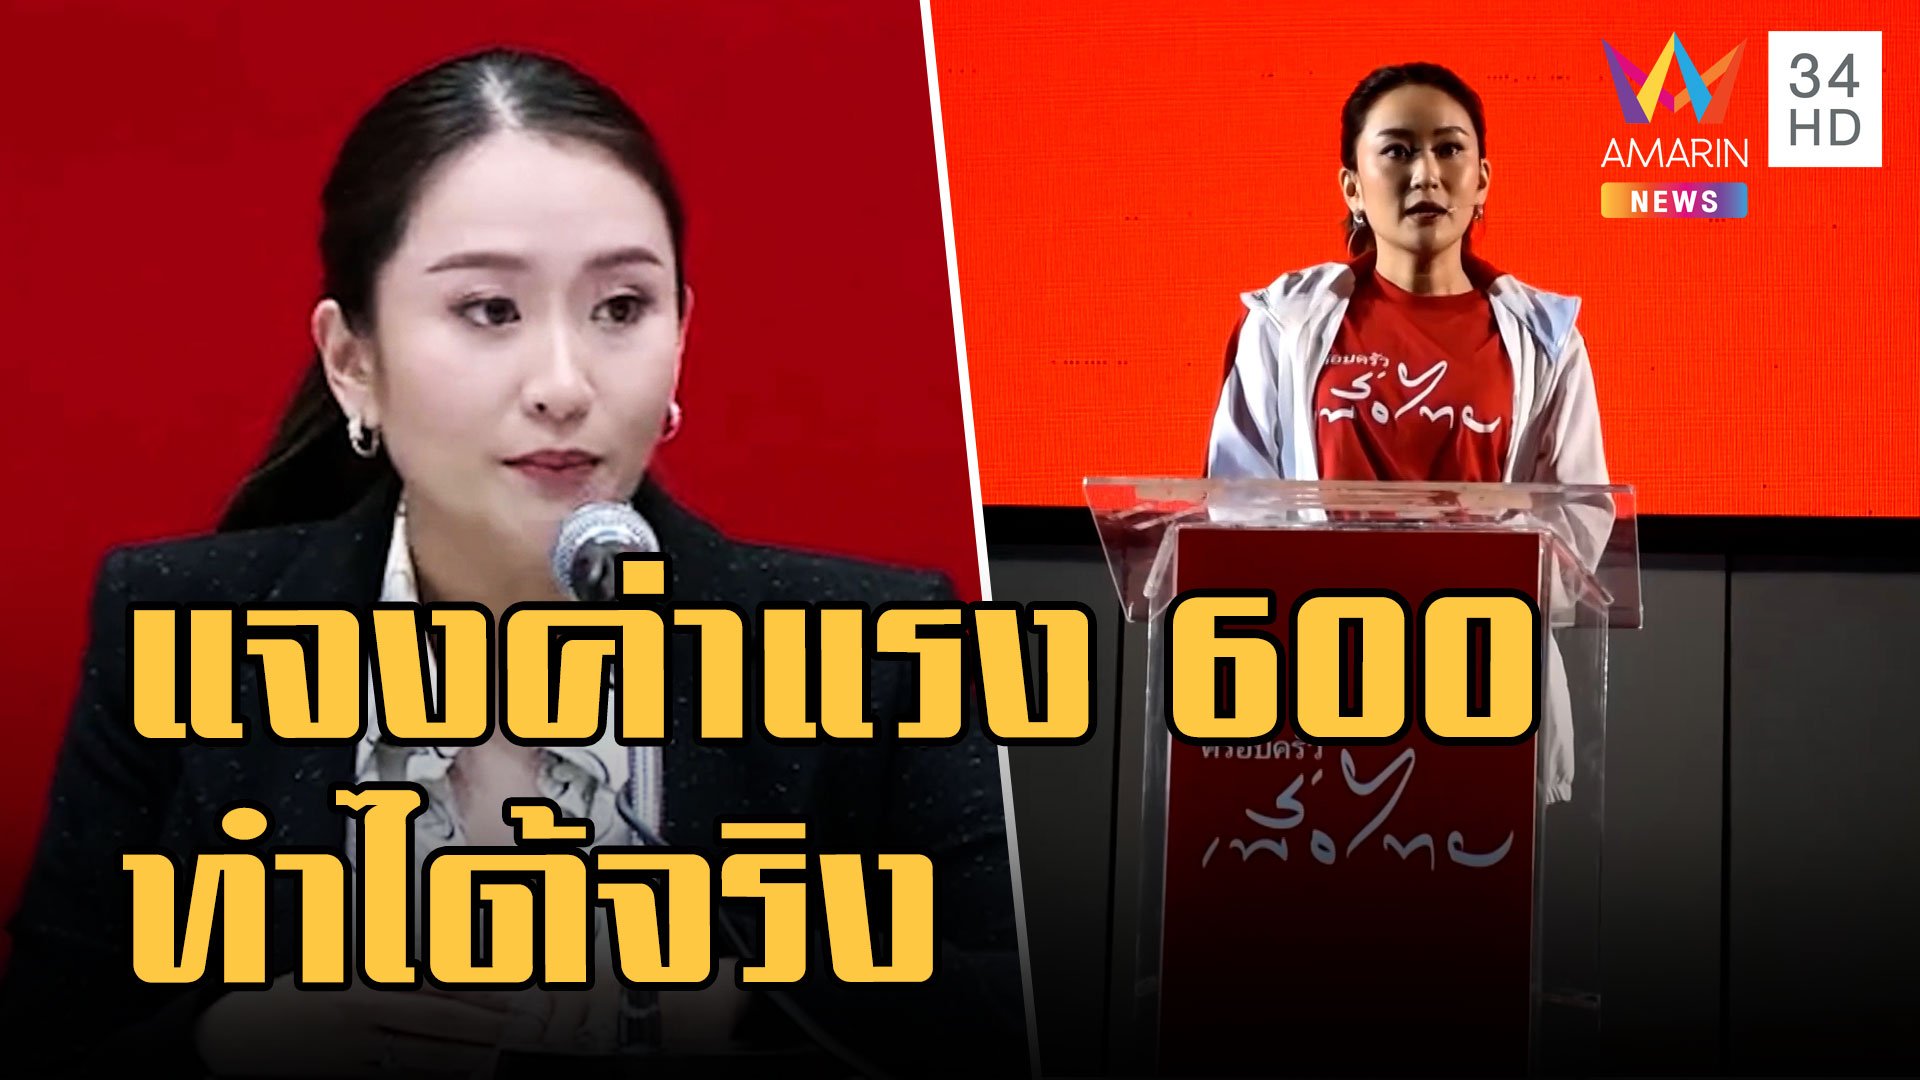 รุมฉะ นโยบายค่าแรง 600 บาท เพื่อไทย 'อุ๊งอิ๊ง' แจงทำได้จริง | ข่าวอรุณอมรินทร์ | 8 ธ.ค. 65 | AMARIN TVHD34